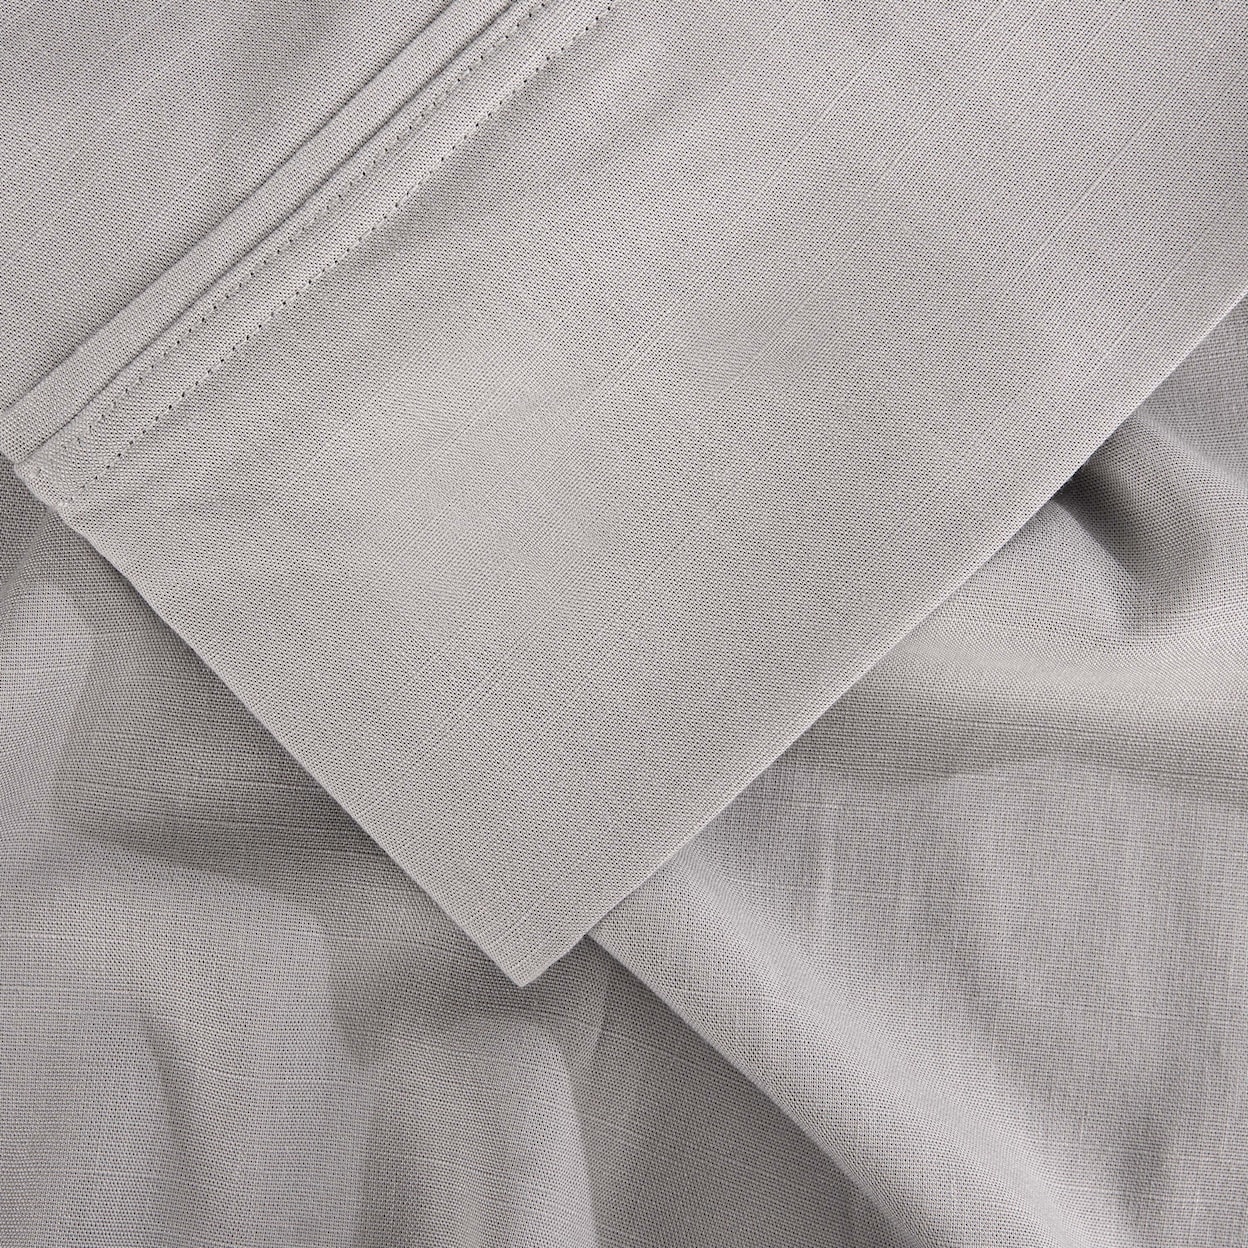 Bedgear Hyper Linen Sheets Sheet Set,Grey, King